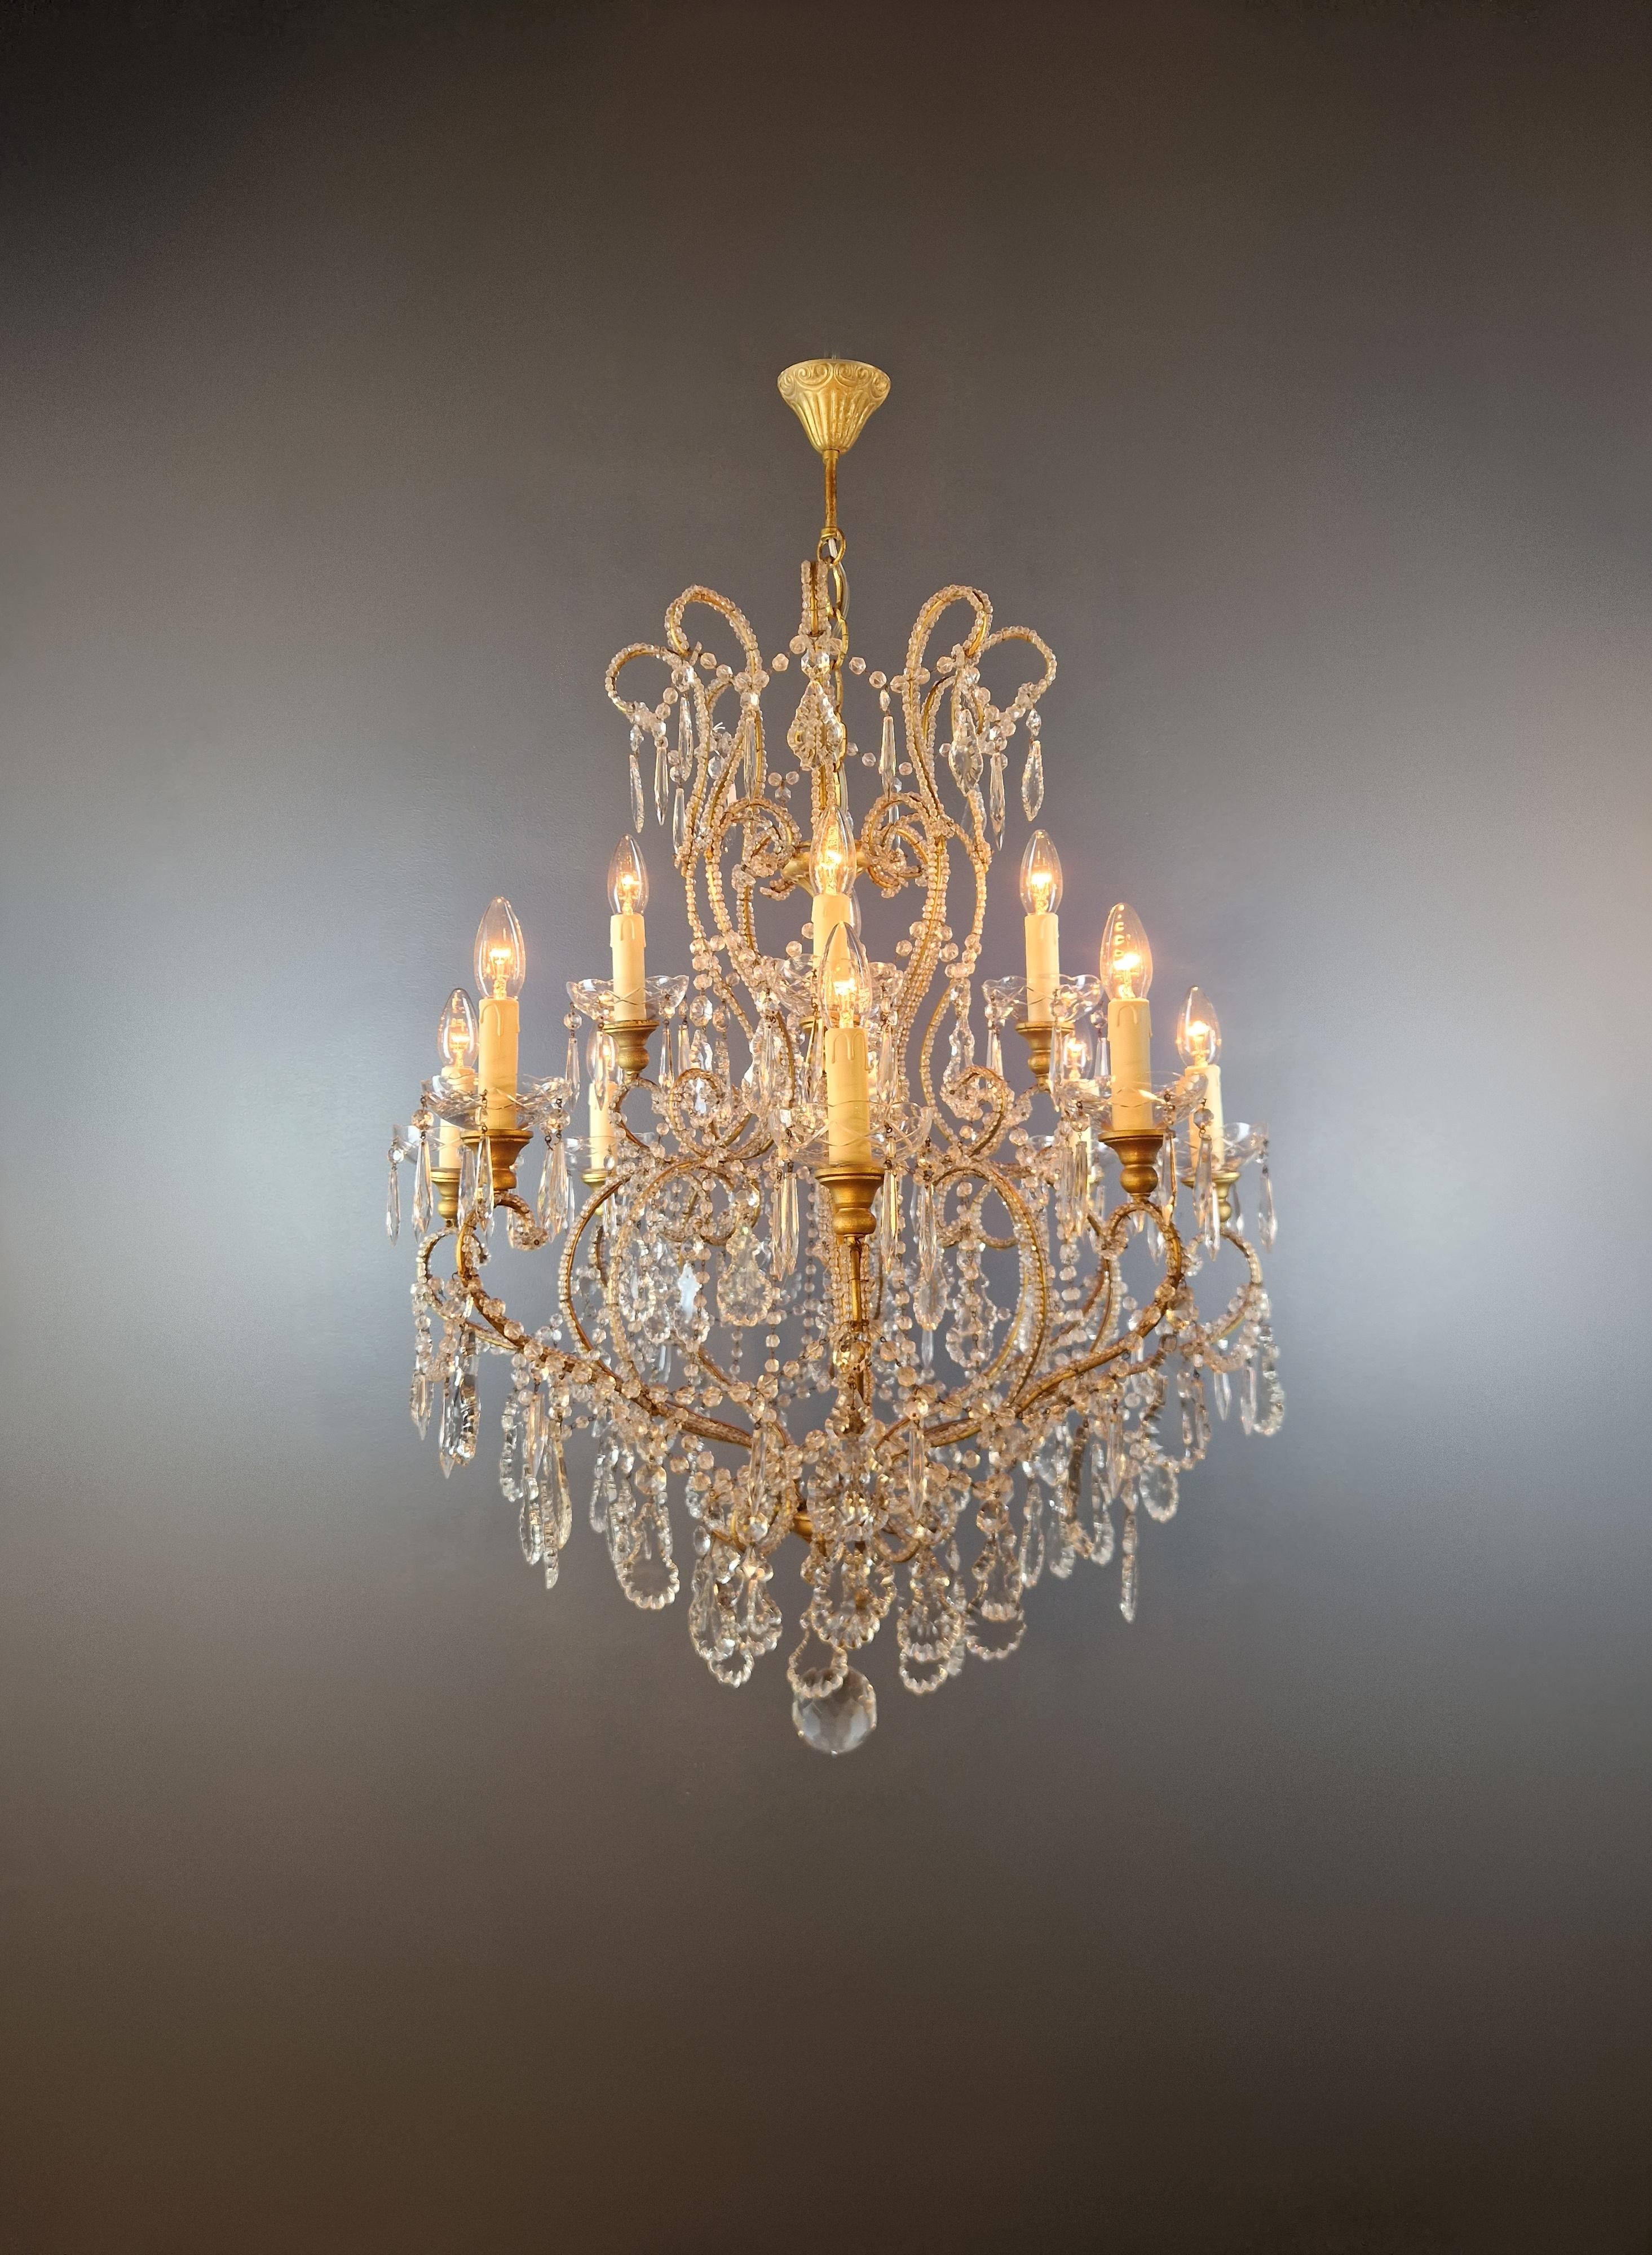 Italian Brass Crystal Chandelier Antique Ceiling Lamp Lustre Art Nouveau Lamp For Sale